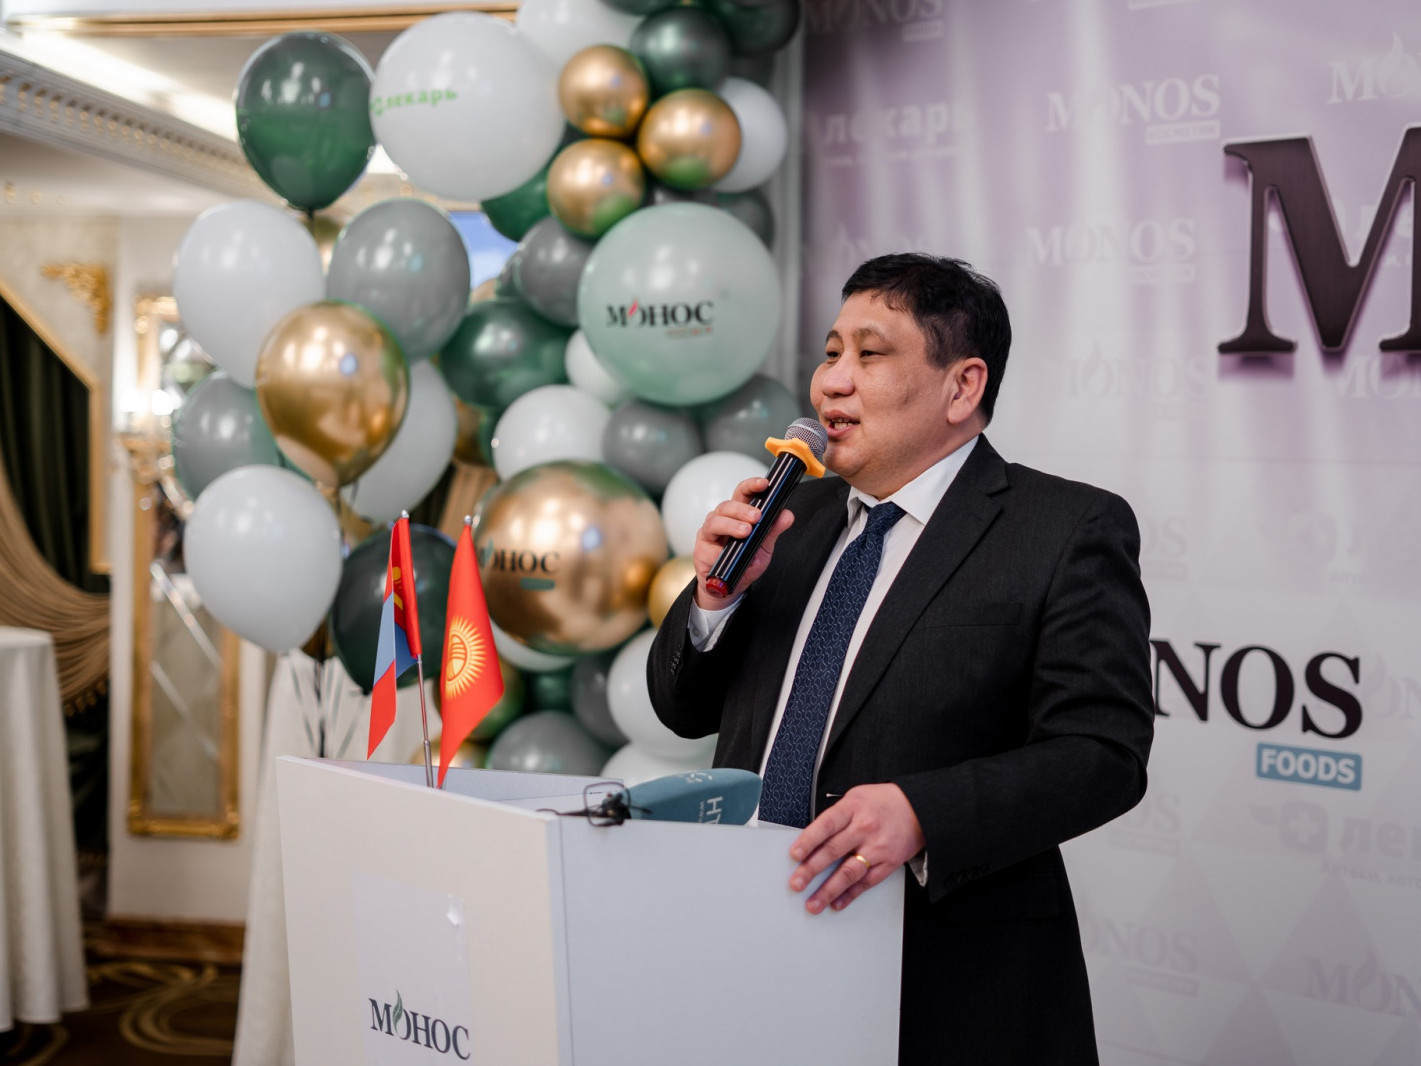 “Монос хүнс” компани Киргиз улсад салбараа нээжээ